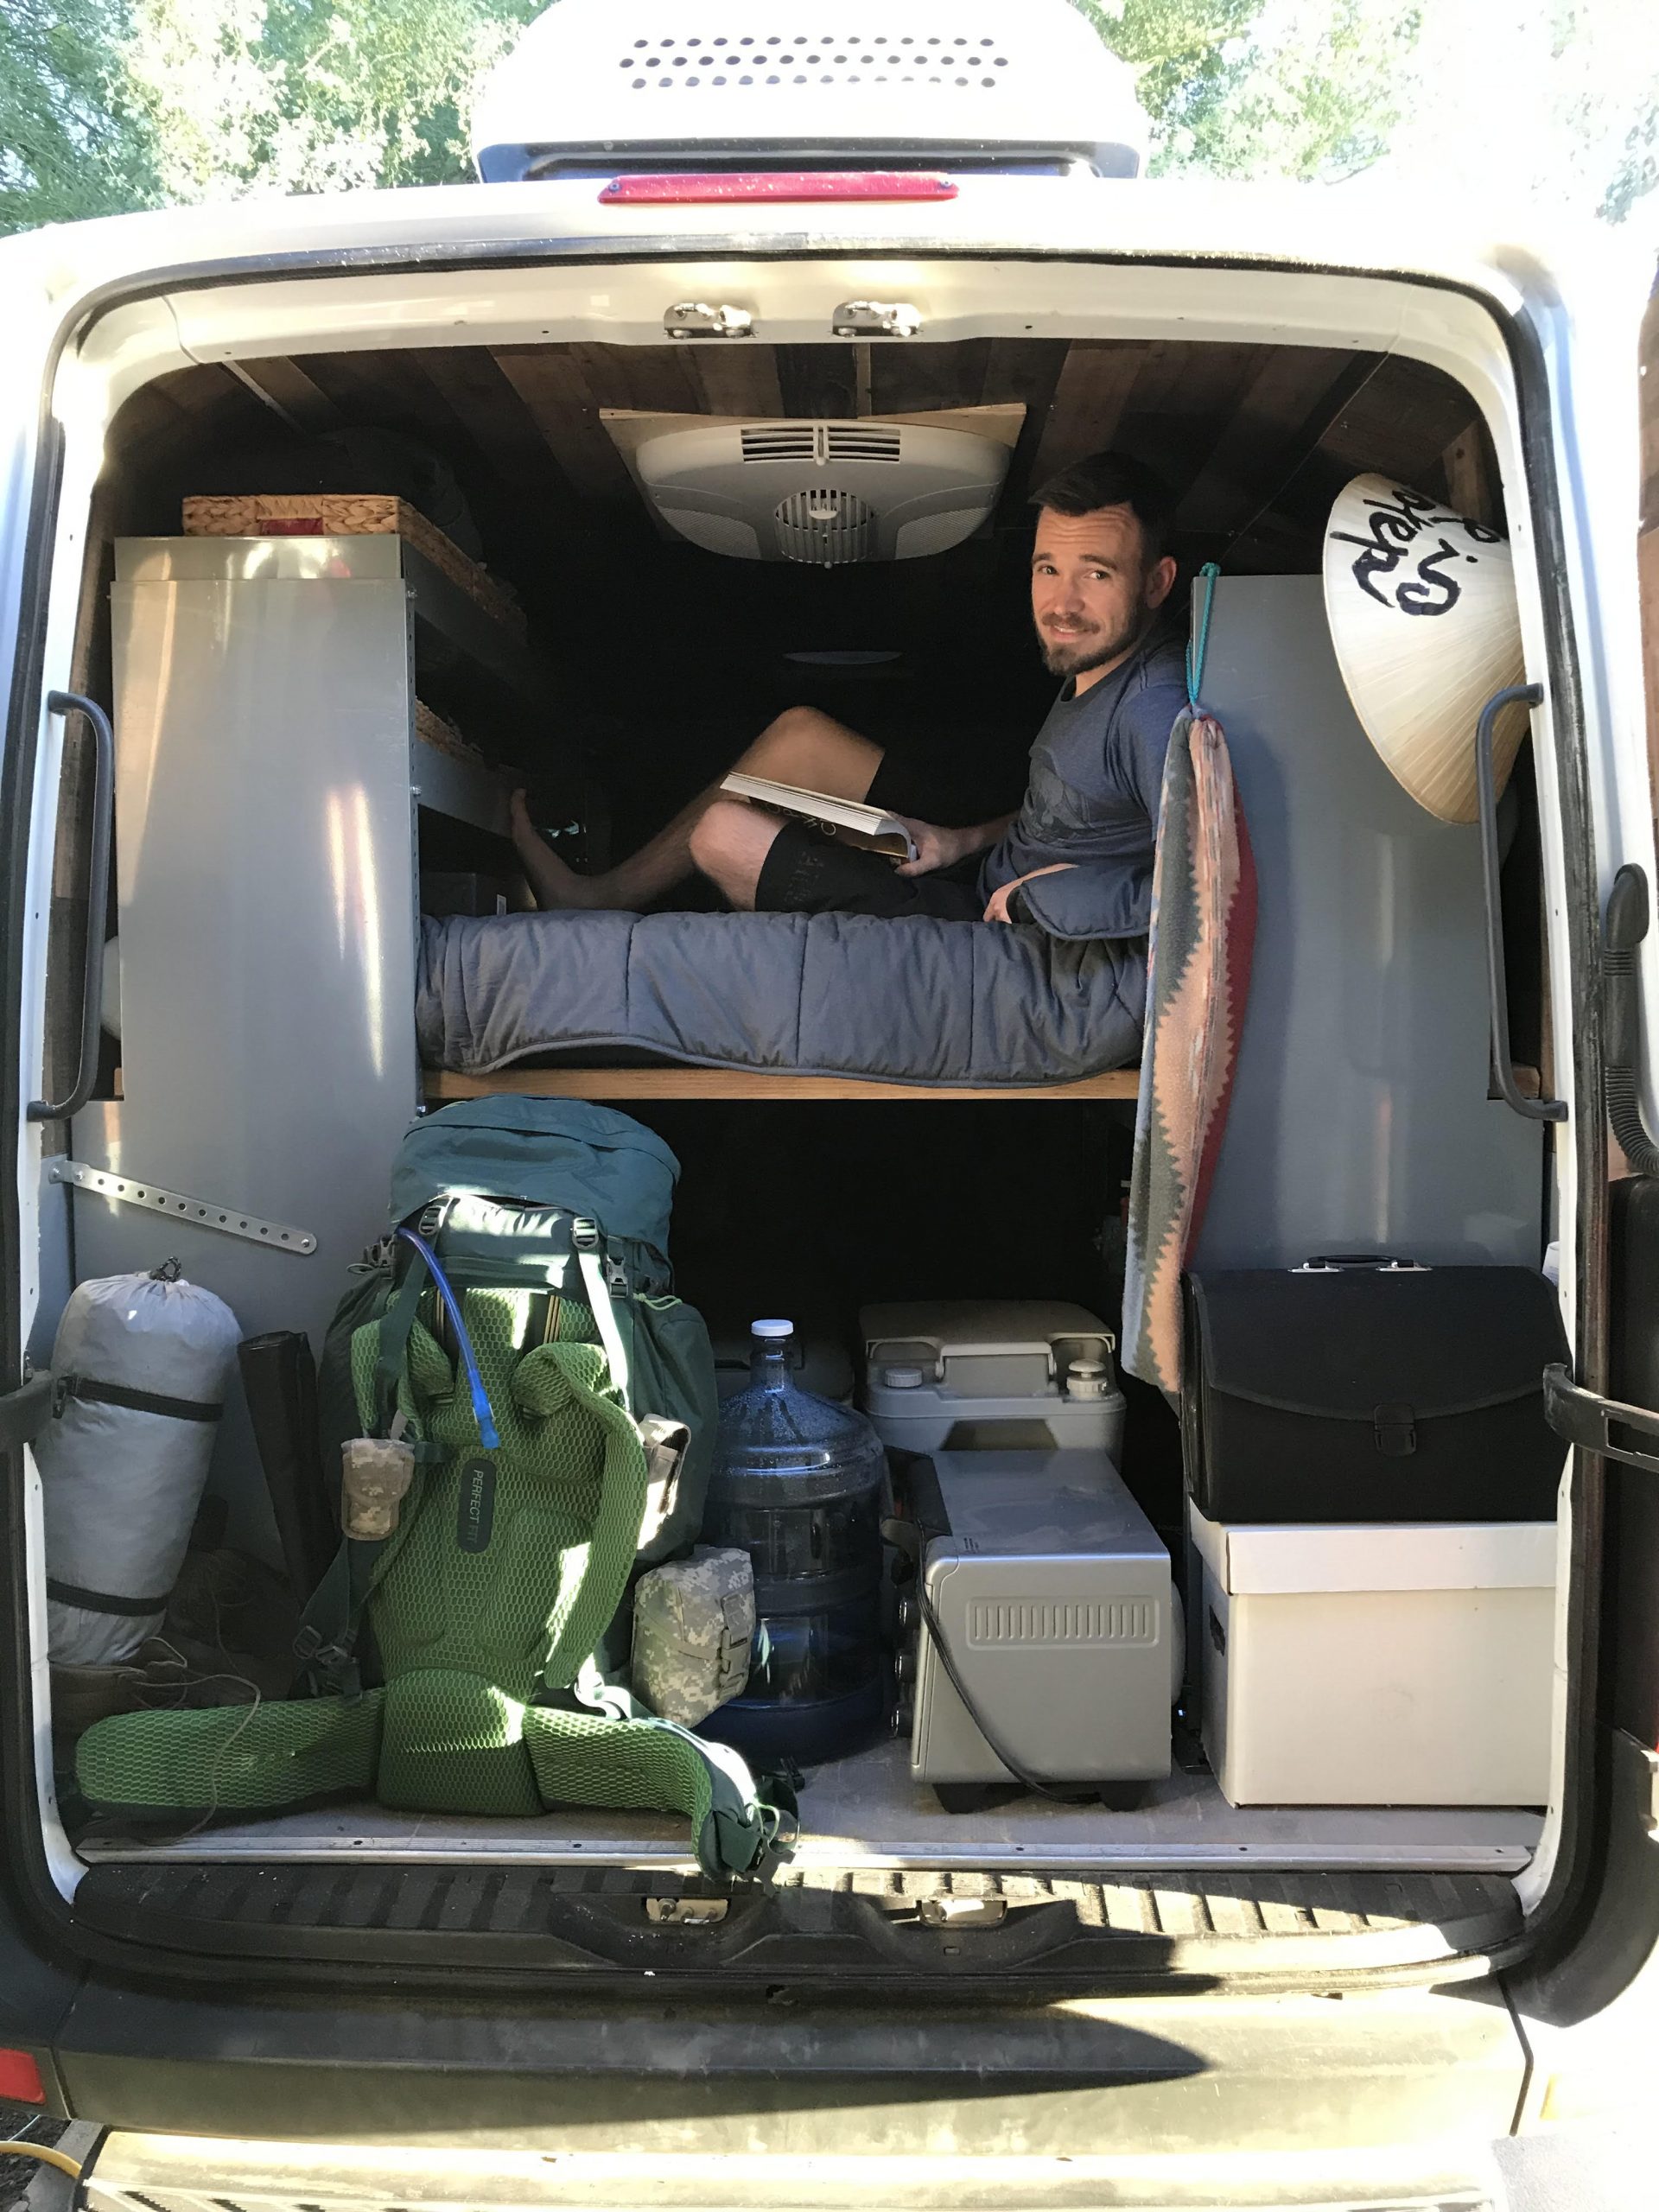 Zack in his van